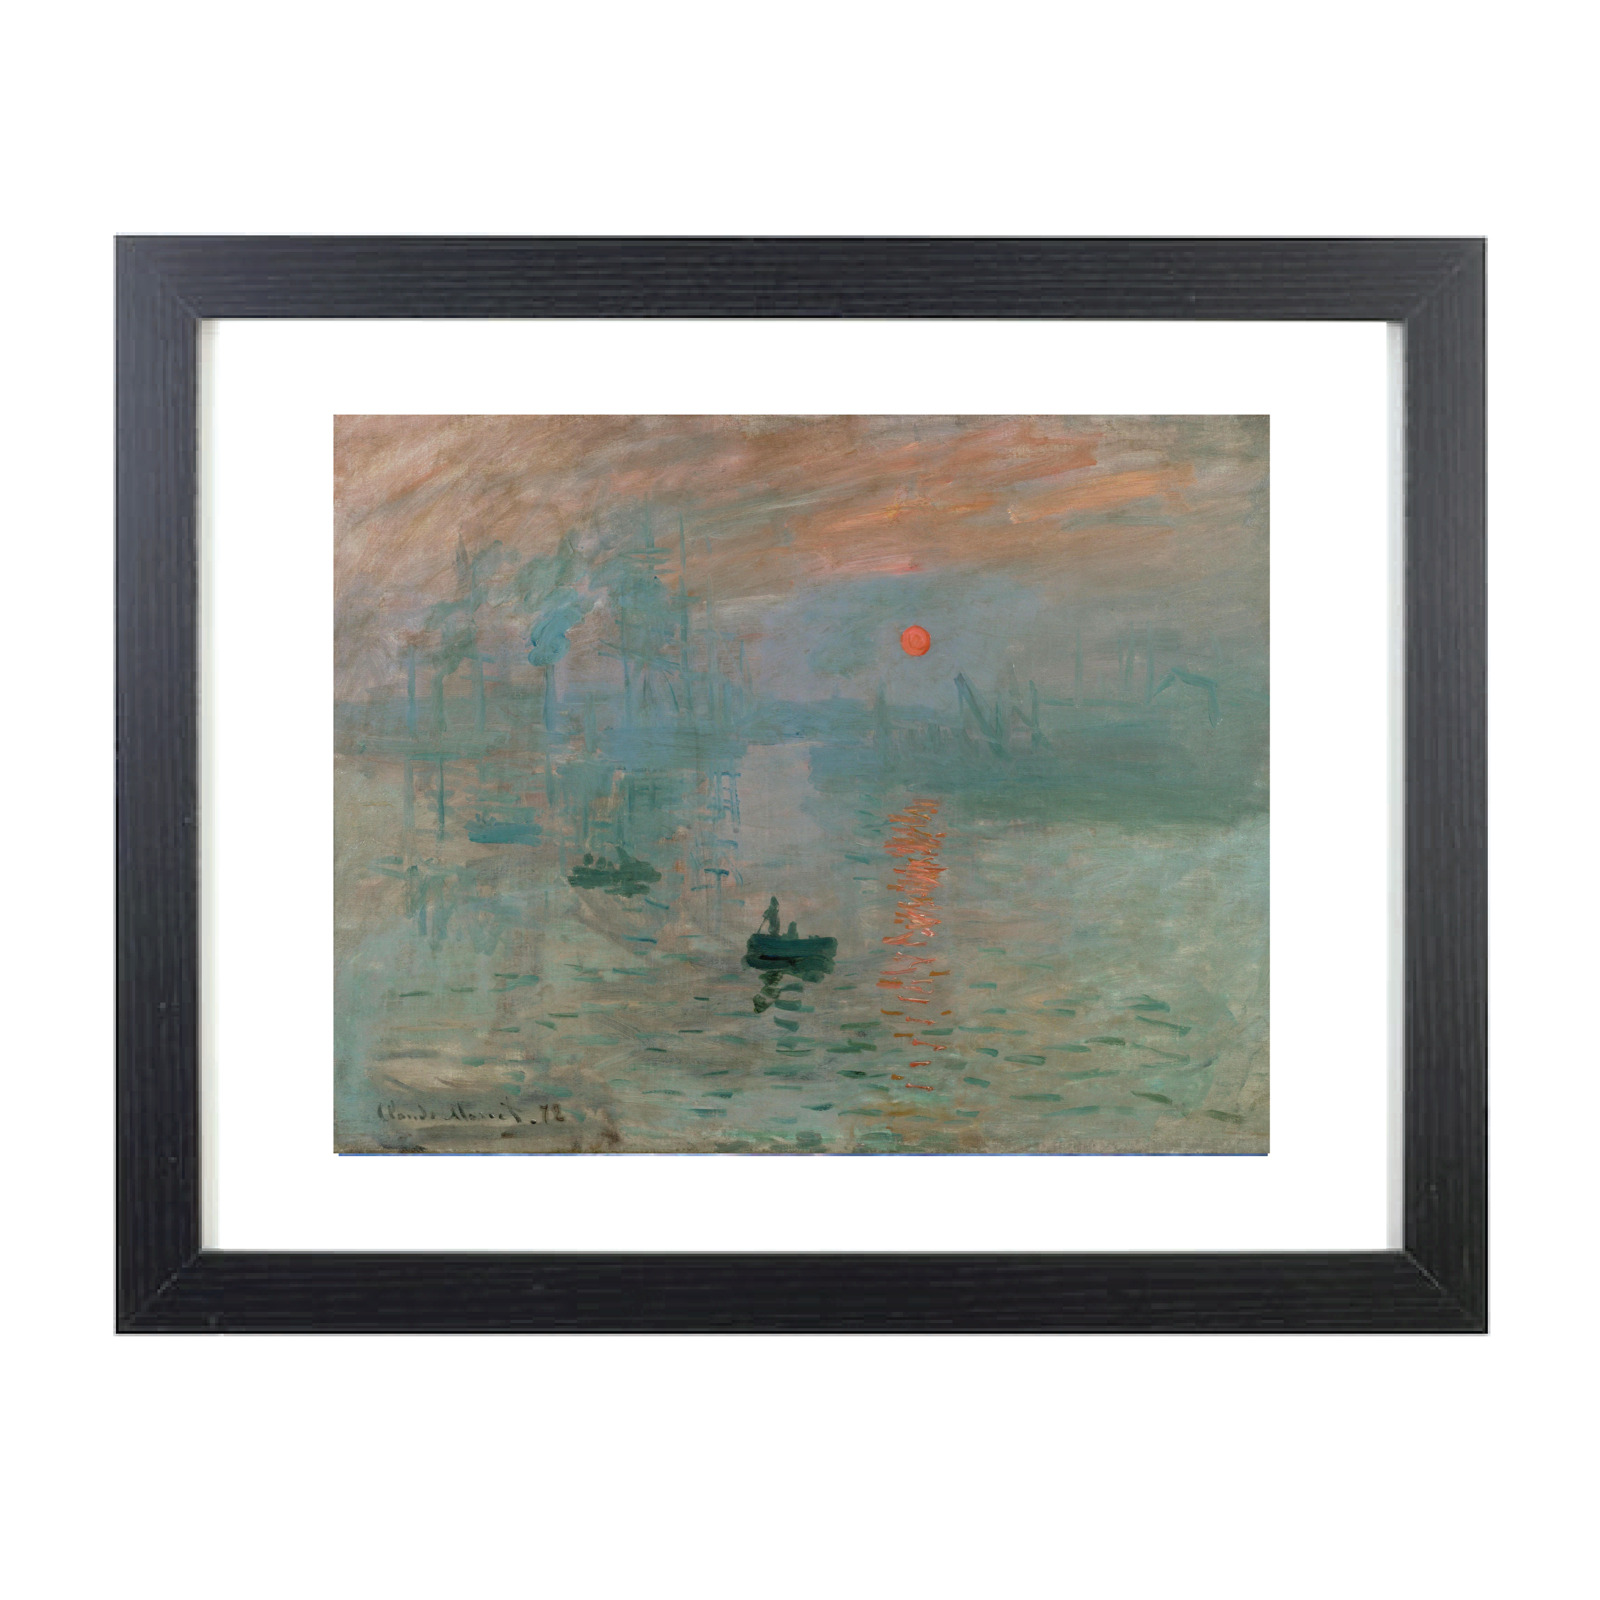 Impression Sunrise Claude Monet Fram Framed Reprint Black Frame Gloss 8X10 Photo